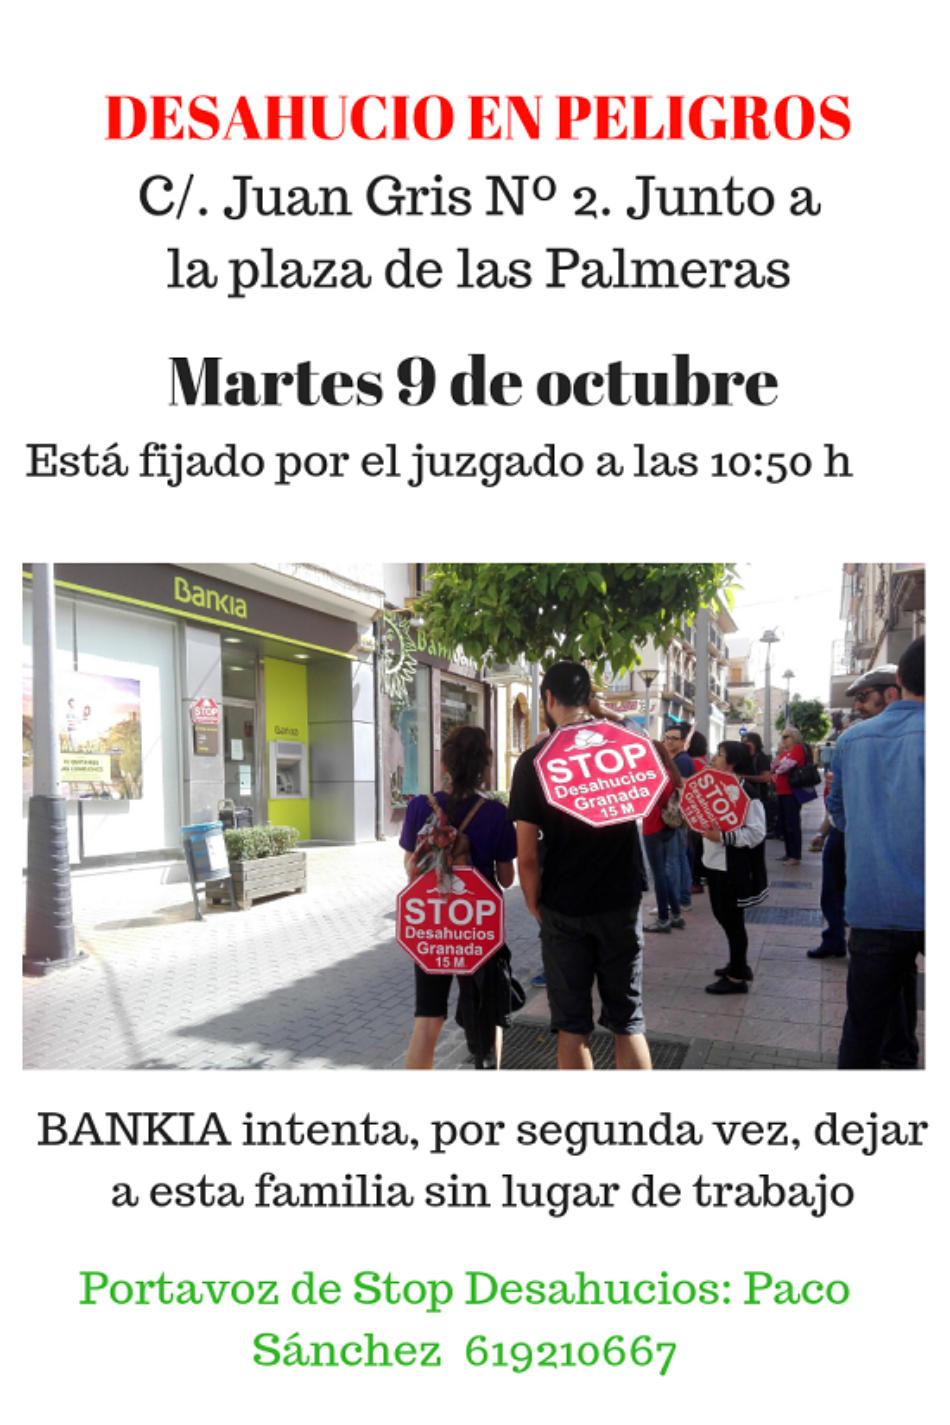 Bankia intenta, por segunda vez, desahuciar a una familia en Peligros